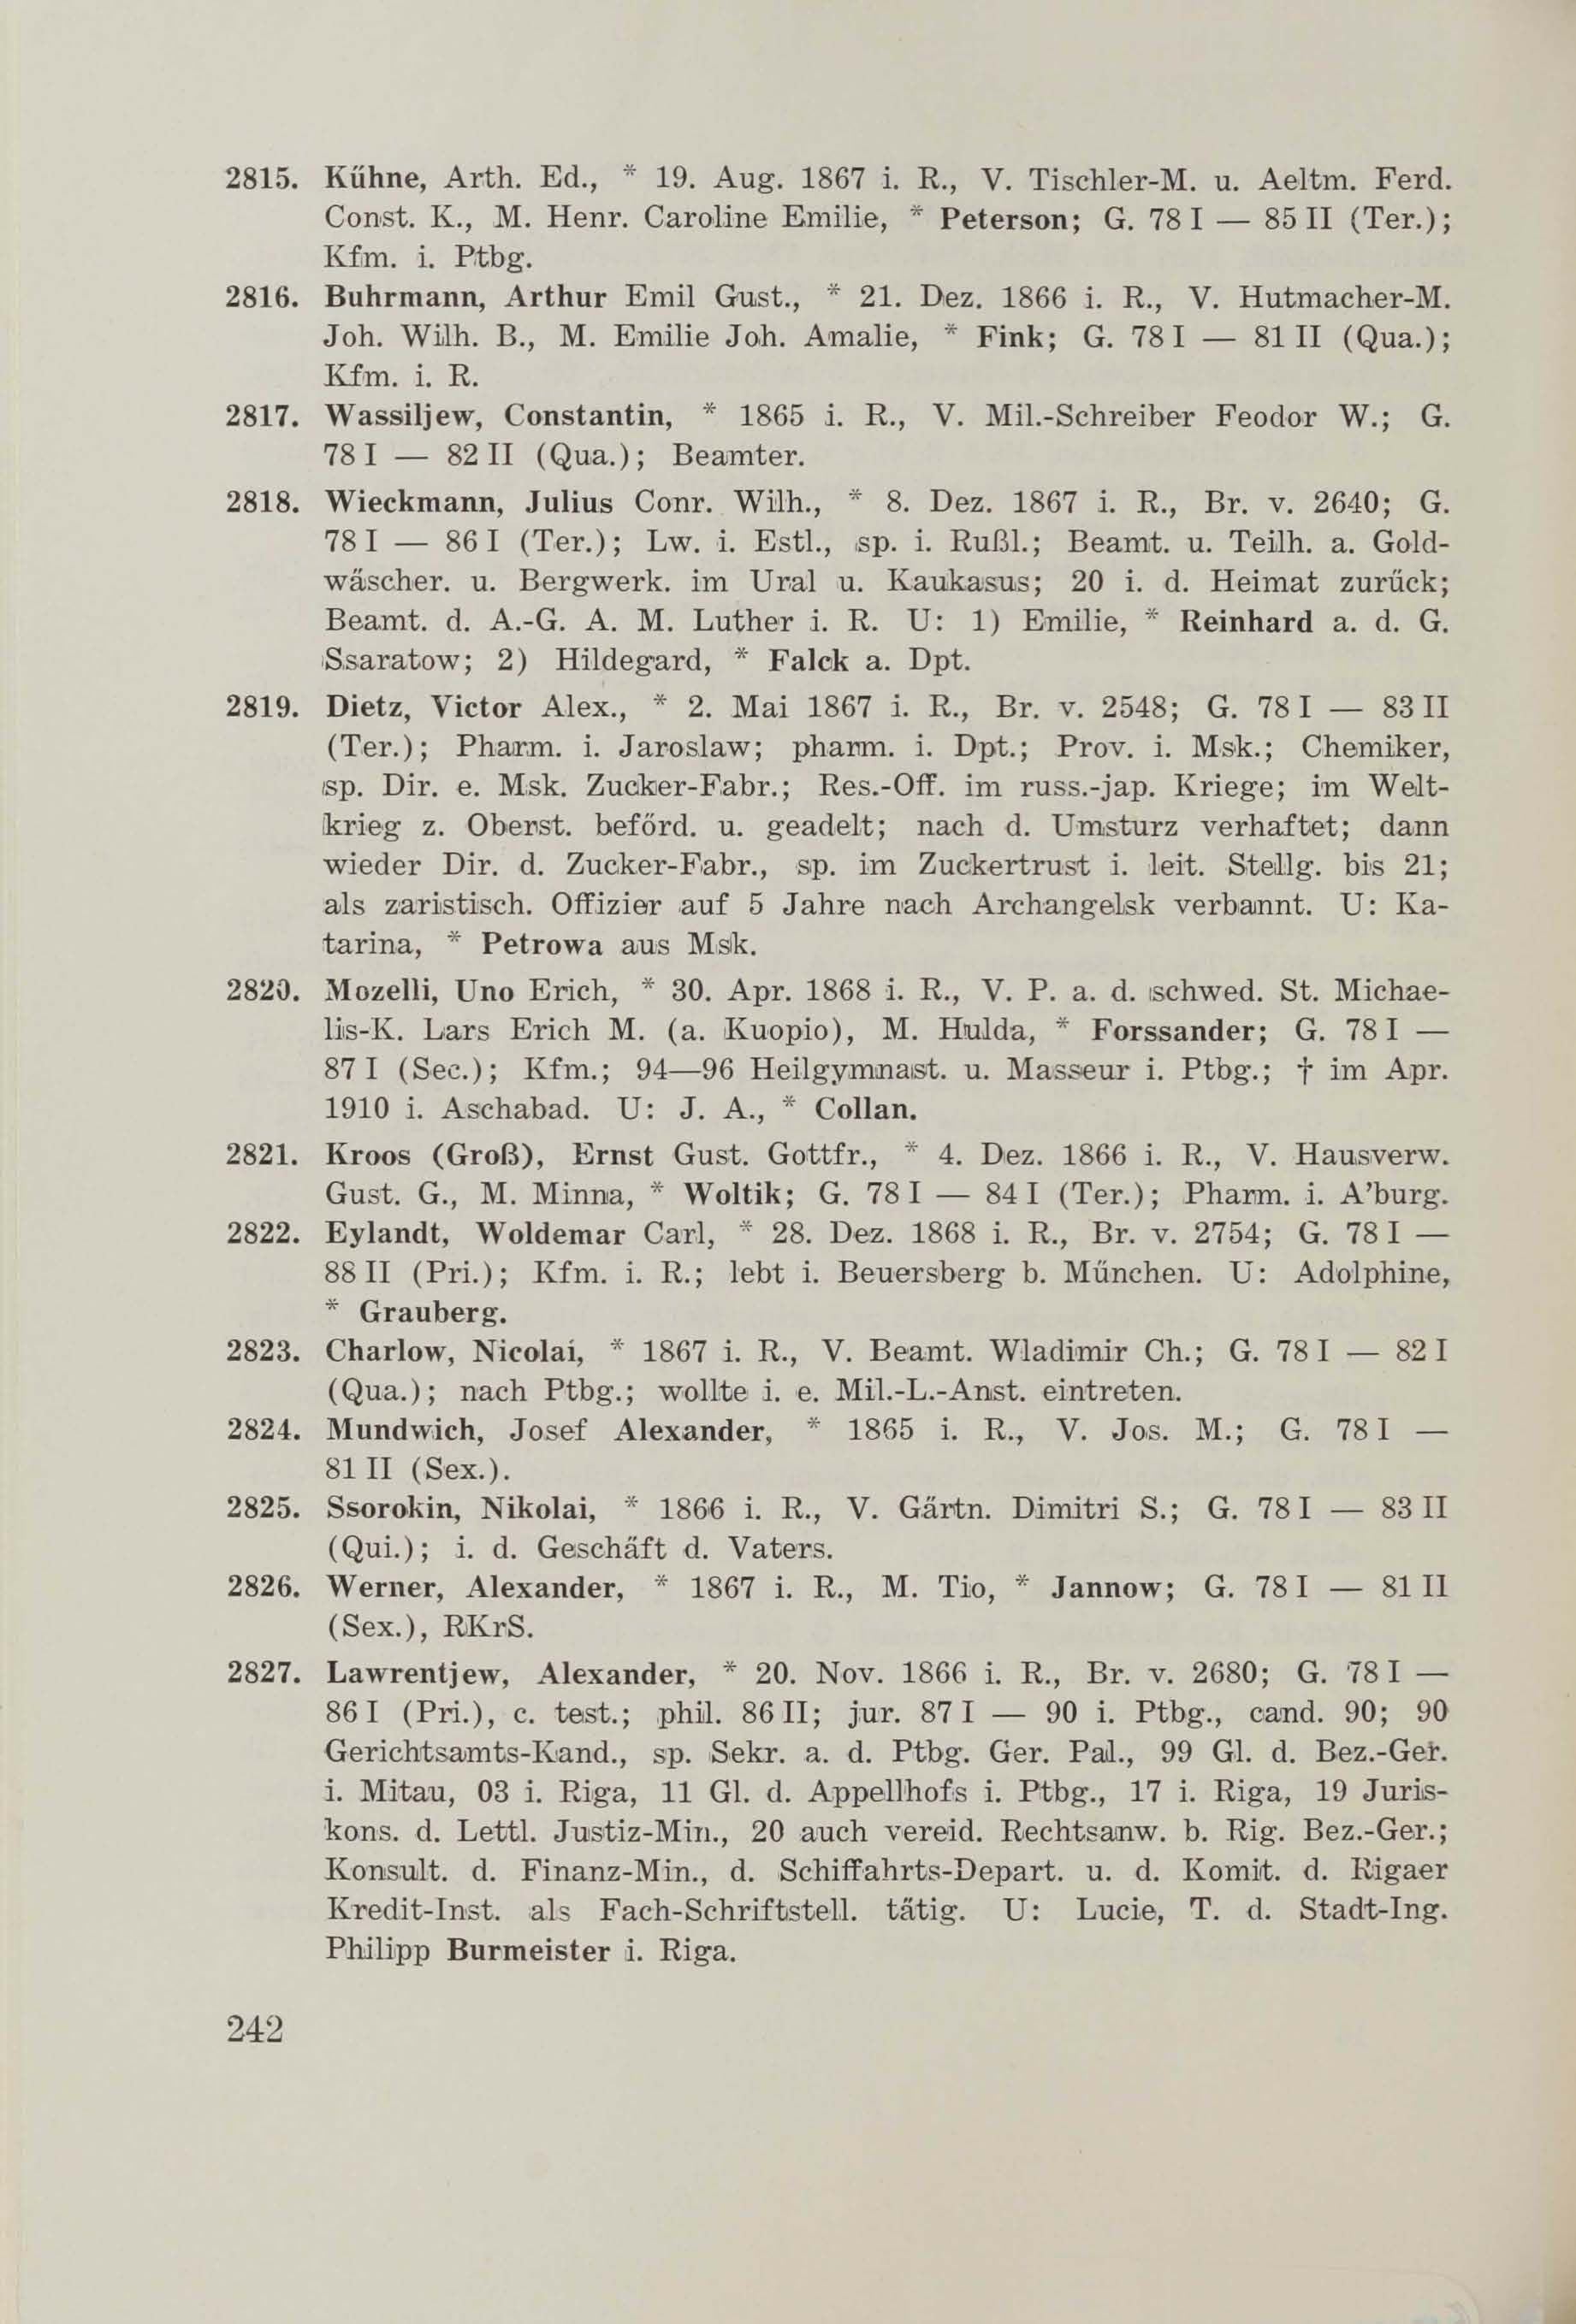 Schüler-Verzeichnis des Revalschen Gouvernements-Gymnasiums 1805–1890 (1931) | 252. (242) Main body of text